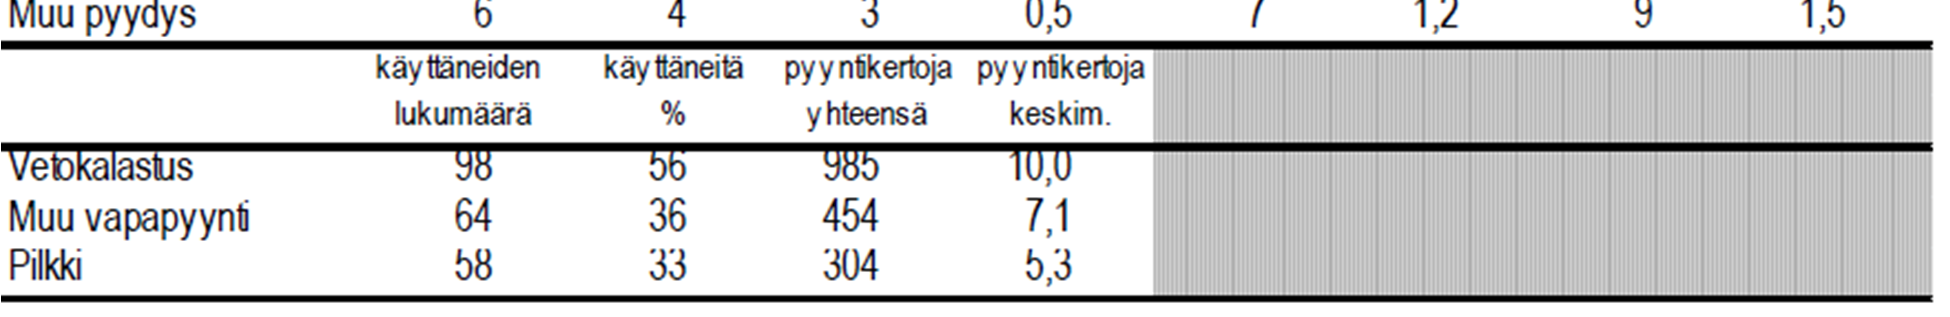 Taulukko 15. Pyydysten käyttötietoja Ossauskosken altaalla vuonna 2010. Kalastaneiden talouksien kokonaismäärä oli 177 kpl.